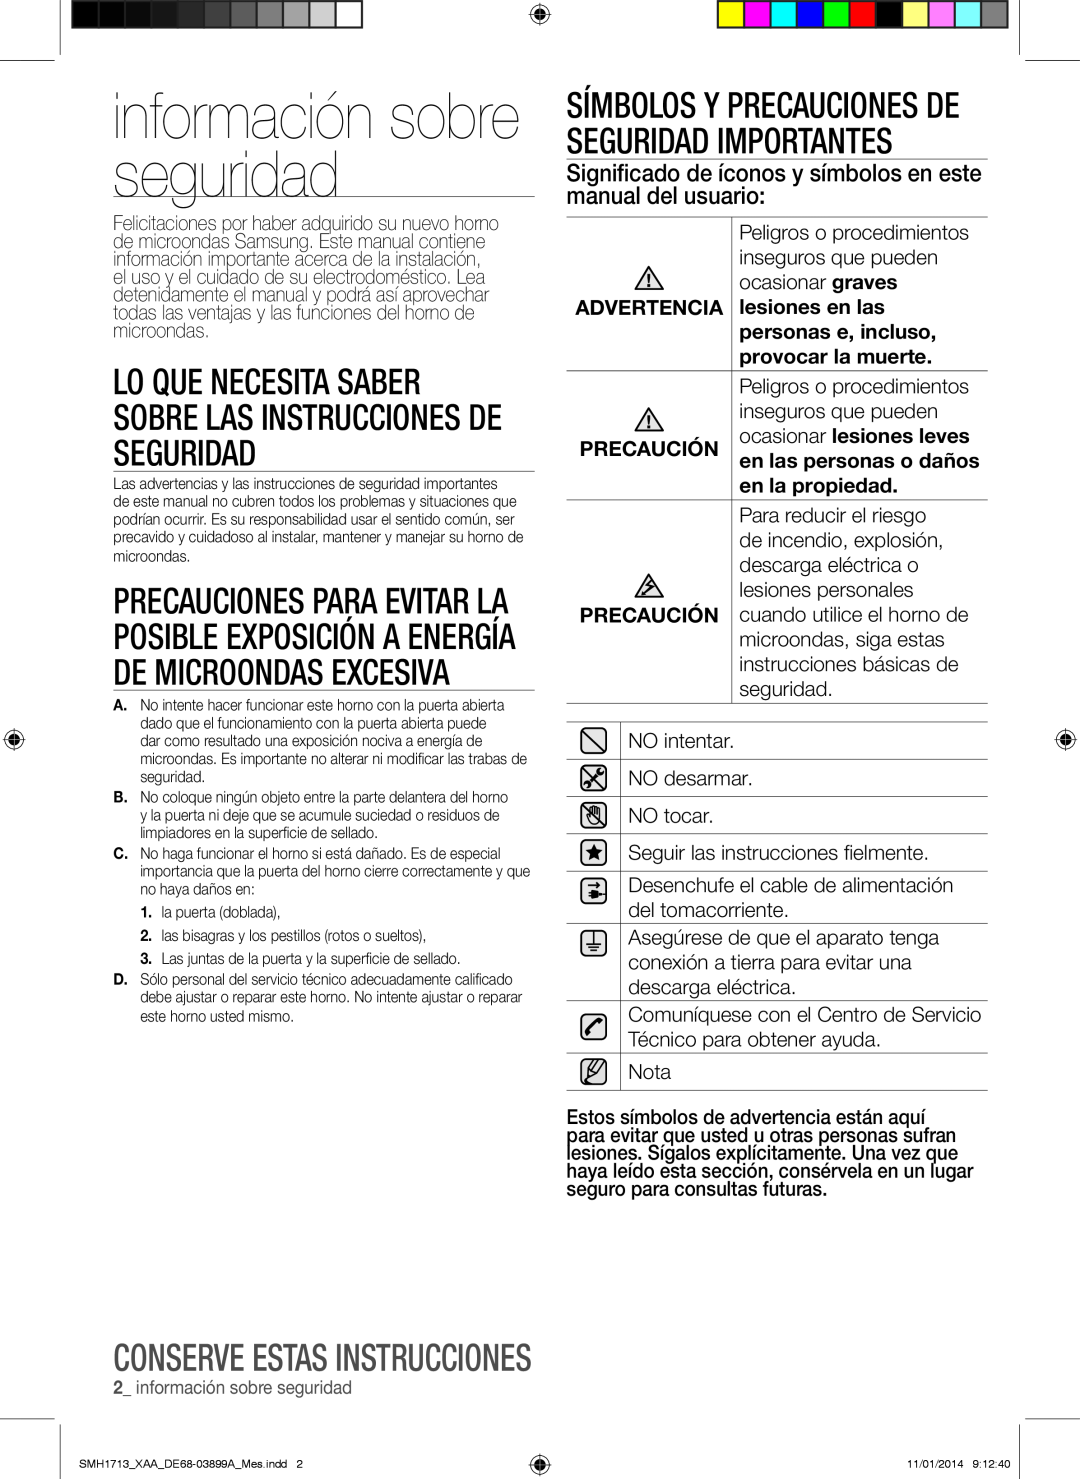 Samsung SMH1713 información sobre seguridad, Conserve estas instrucciones, Advertencia, lesiones en las, en la propiedad 